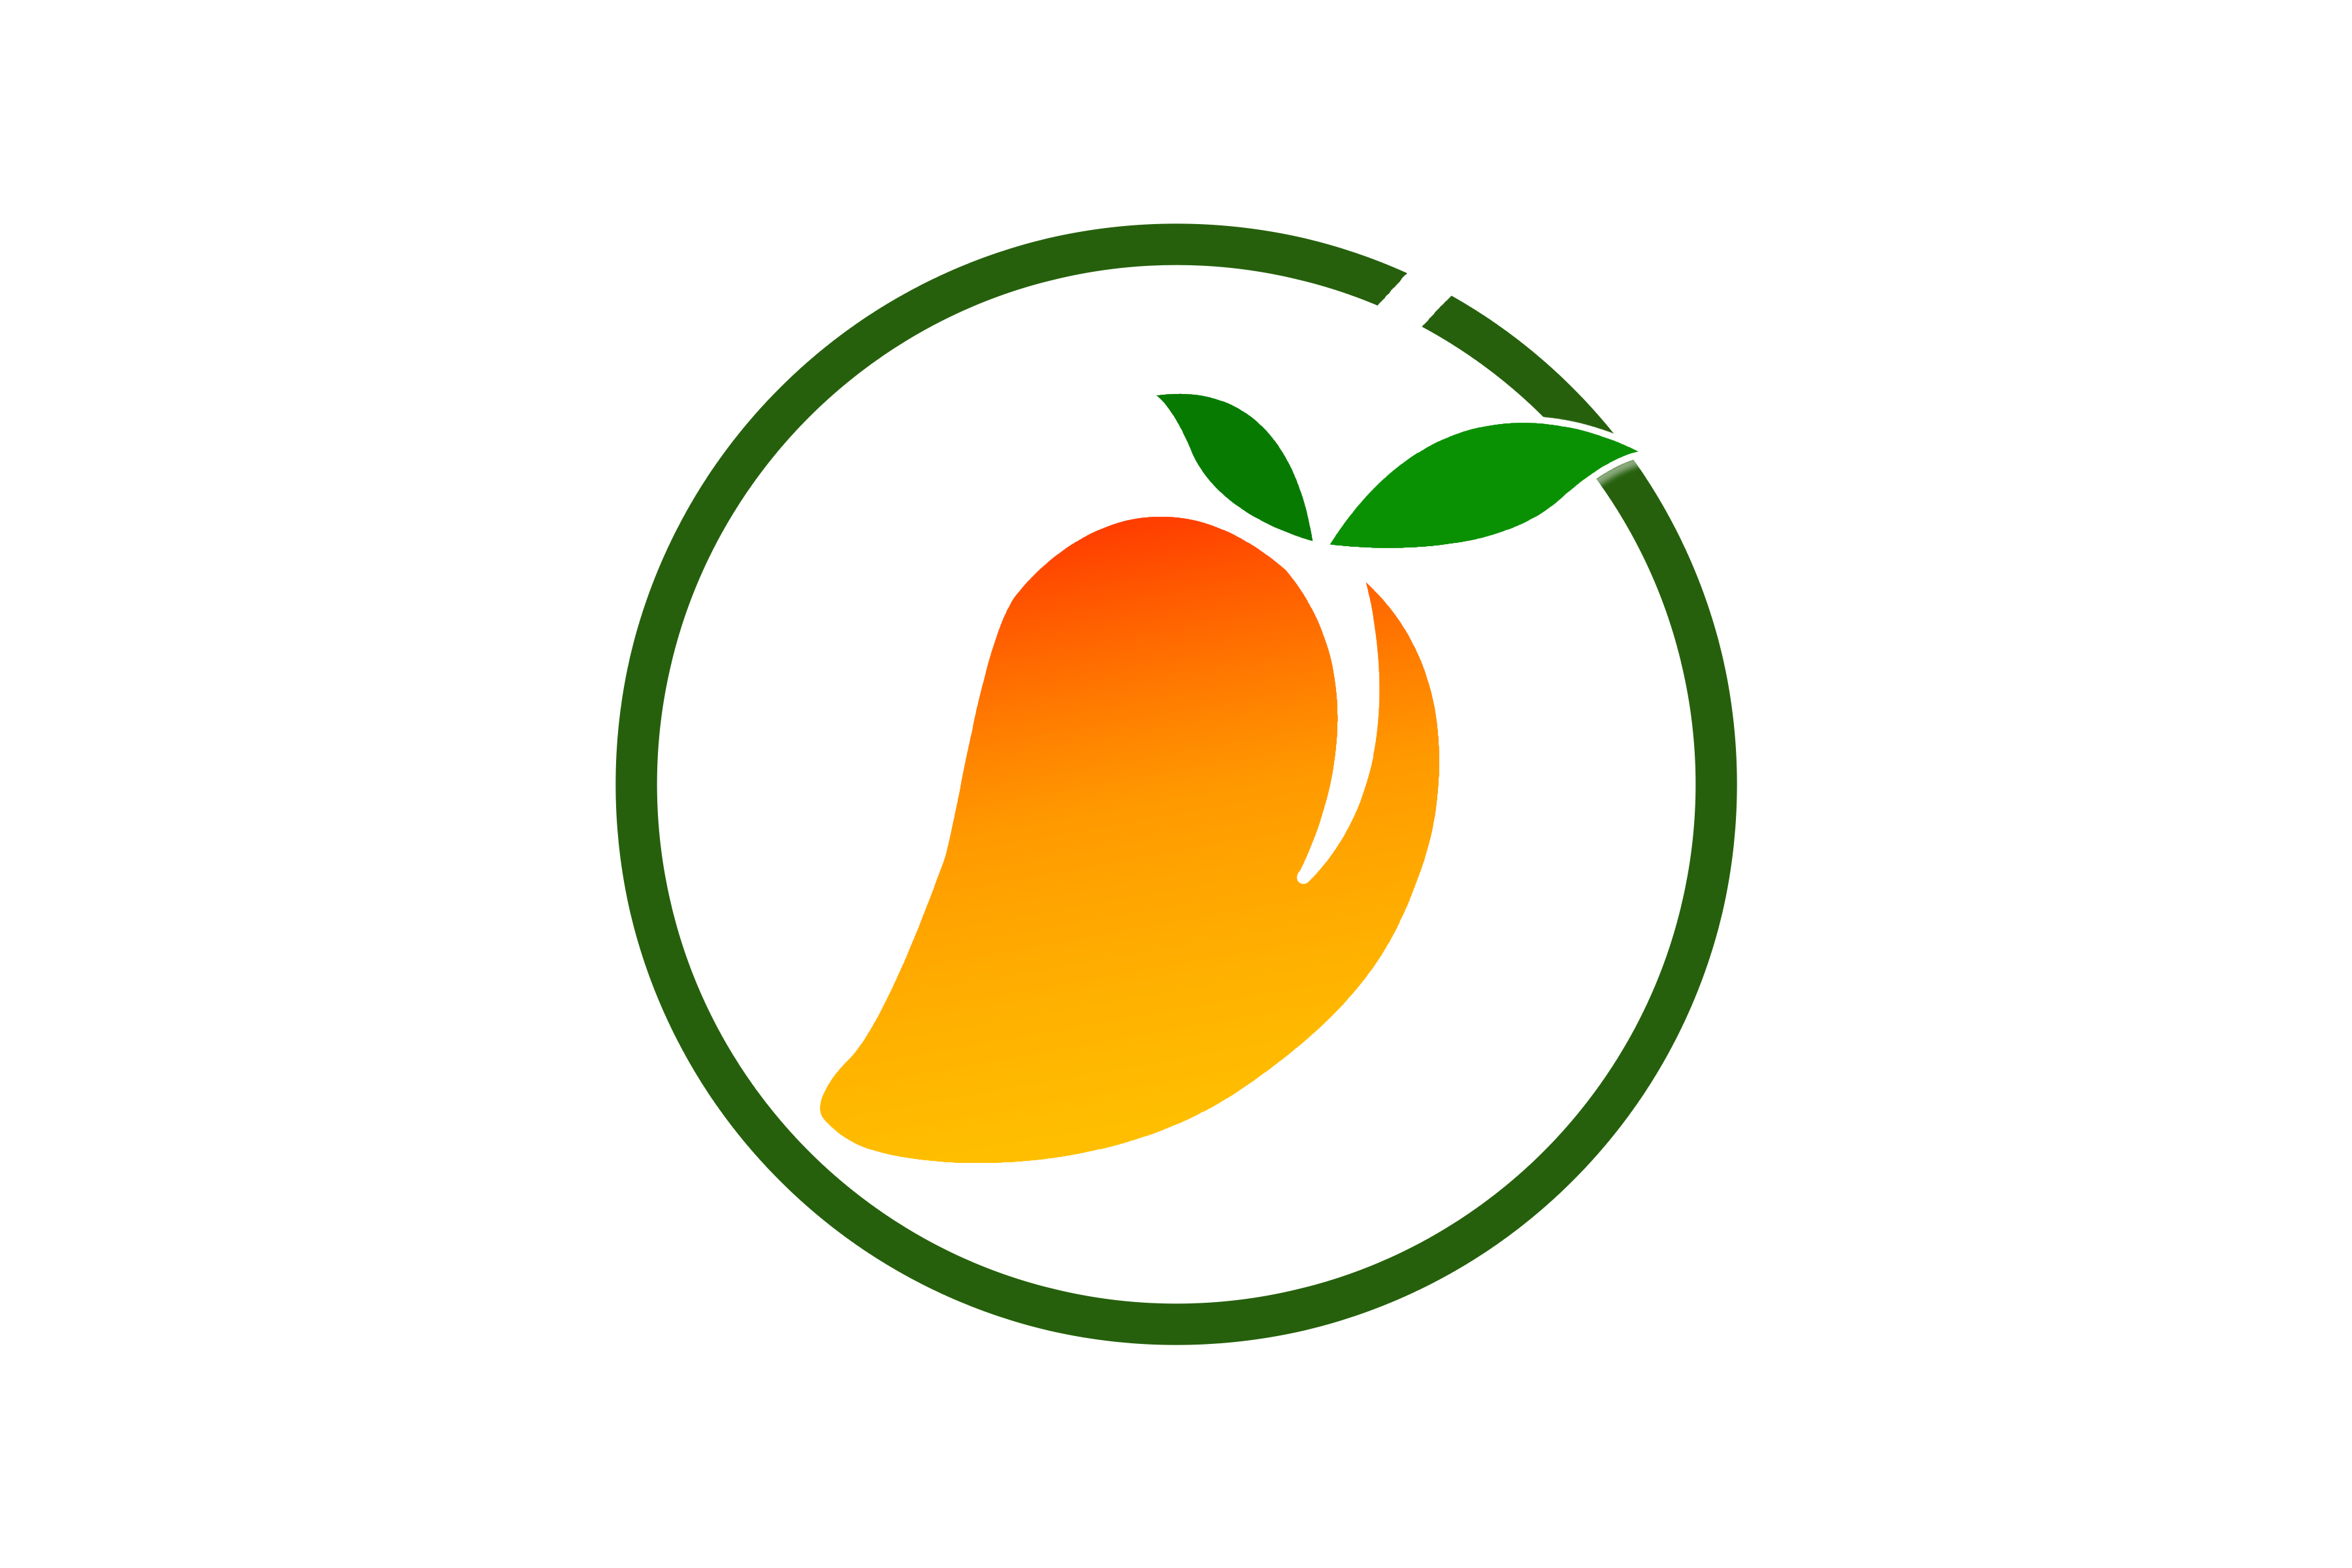 mango-fruit-logo-png-image-vector-free-download